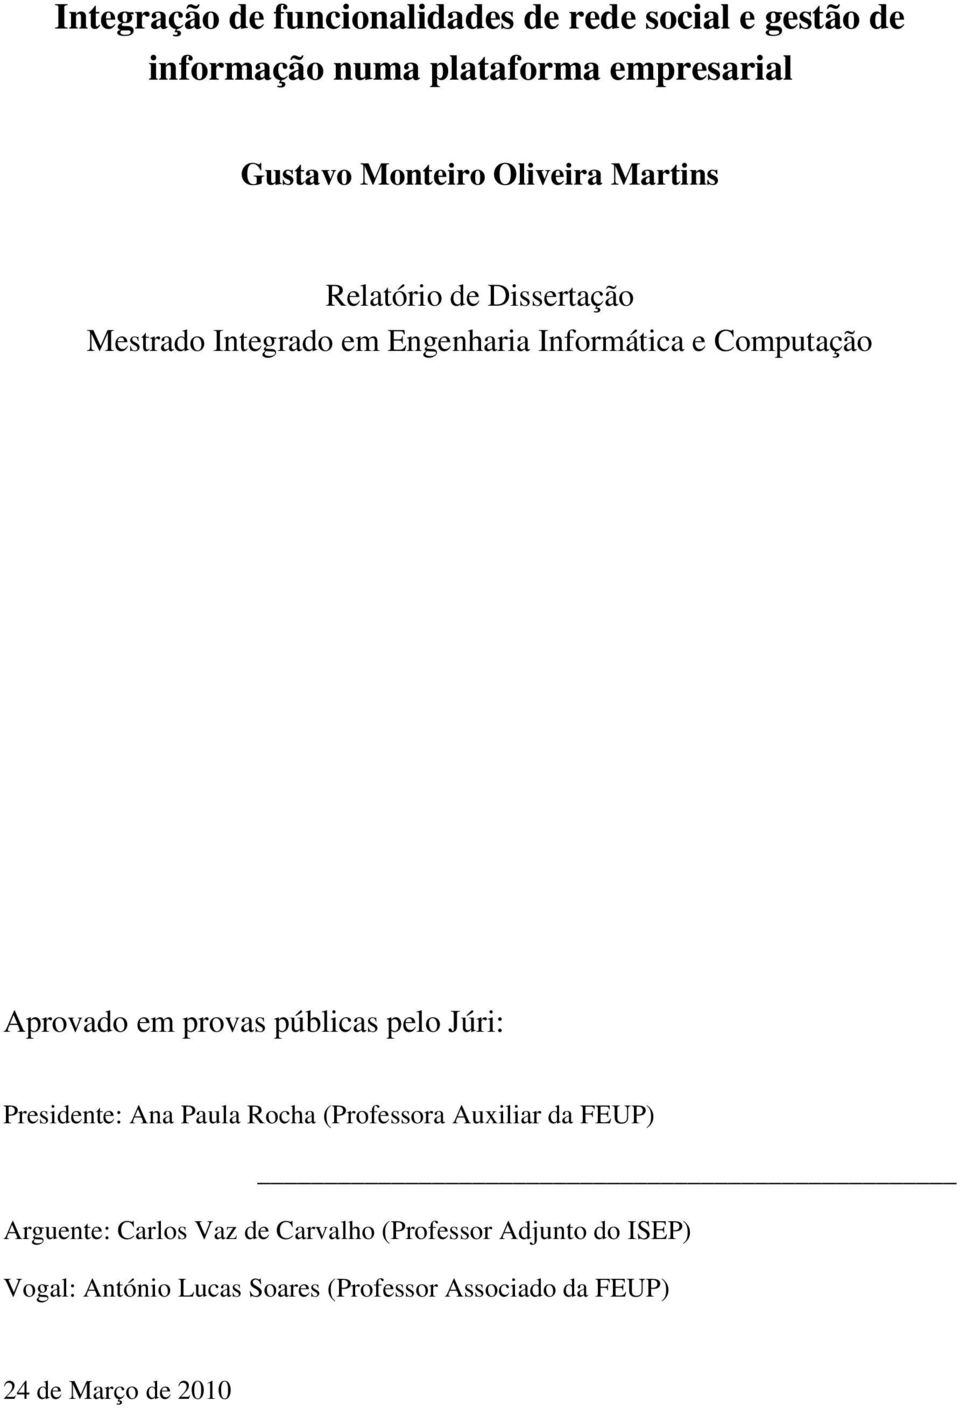 Aprovado em provas públicas pelo Júri: Presidente: Ana Paula Rocha (Professora Auxiliar da FEUP) Arguente: